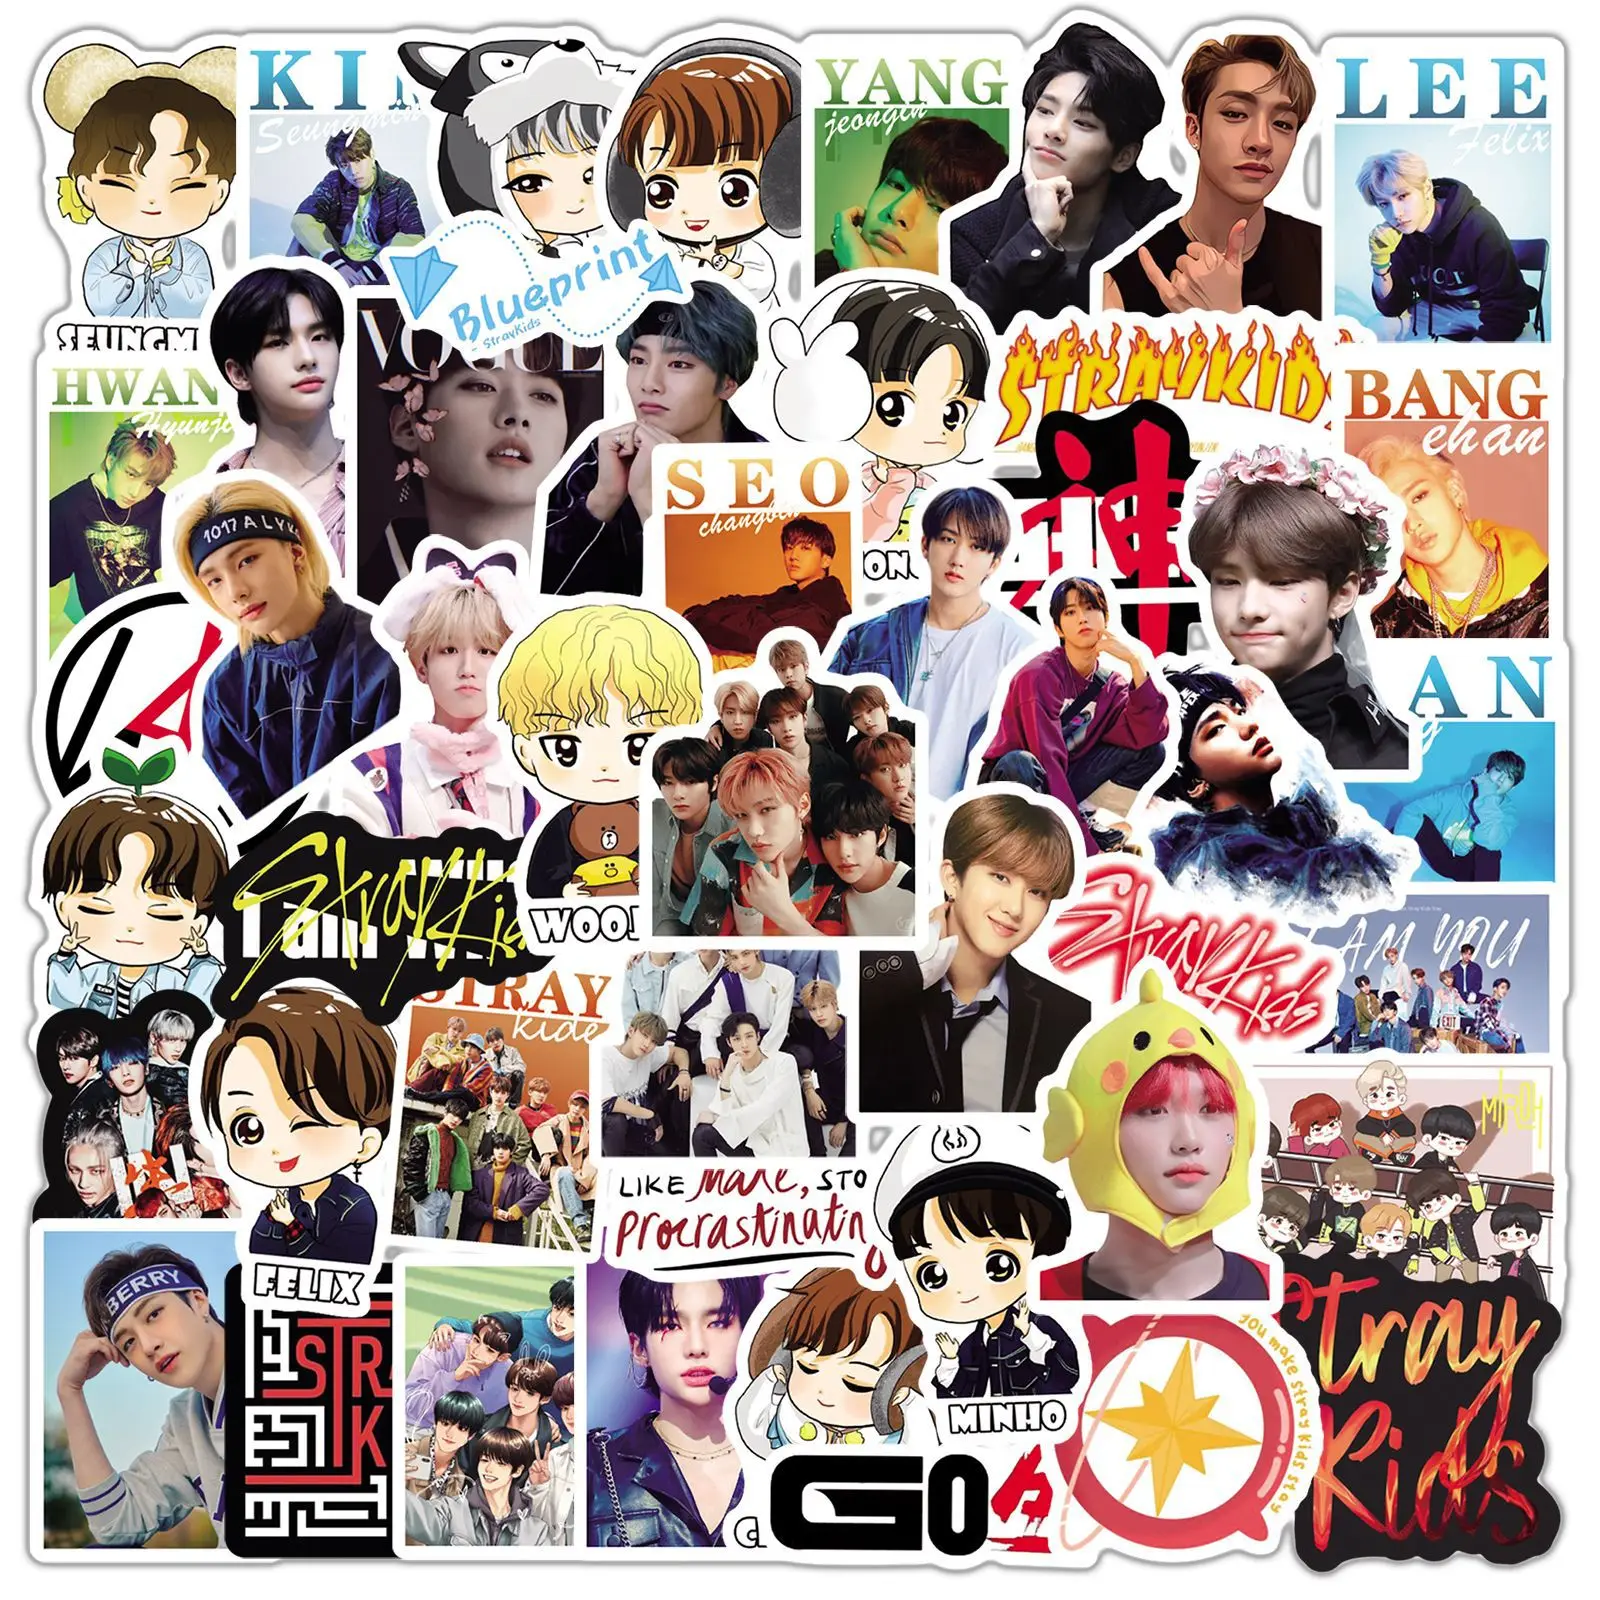 Sticker Goose BTS Stickers